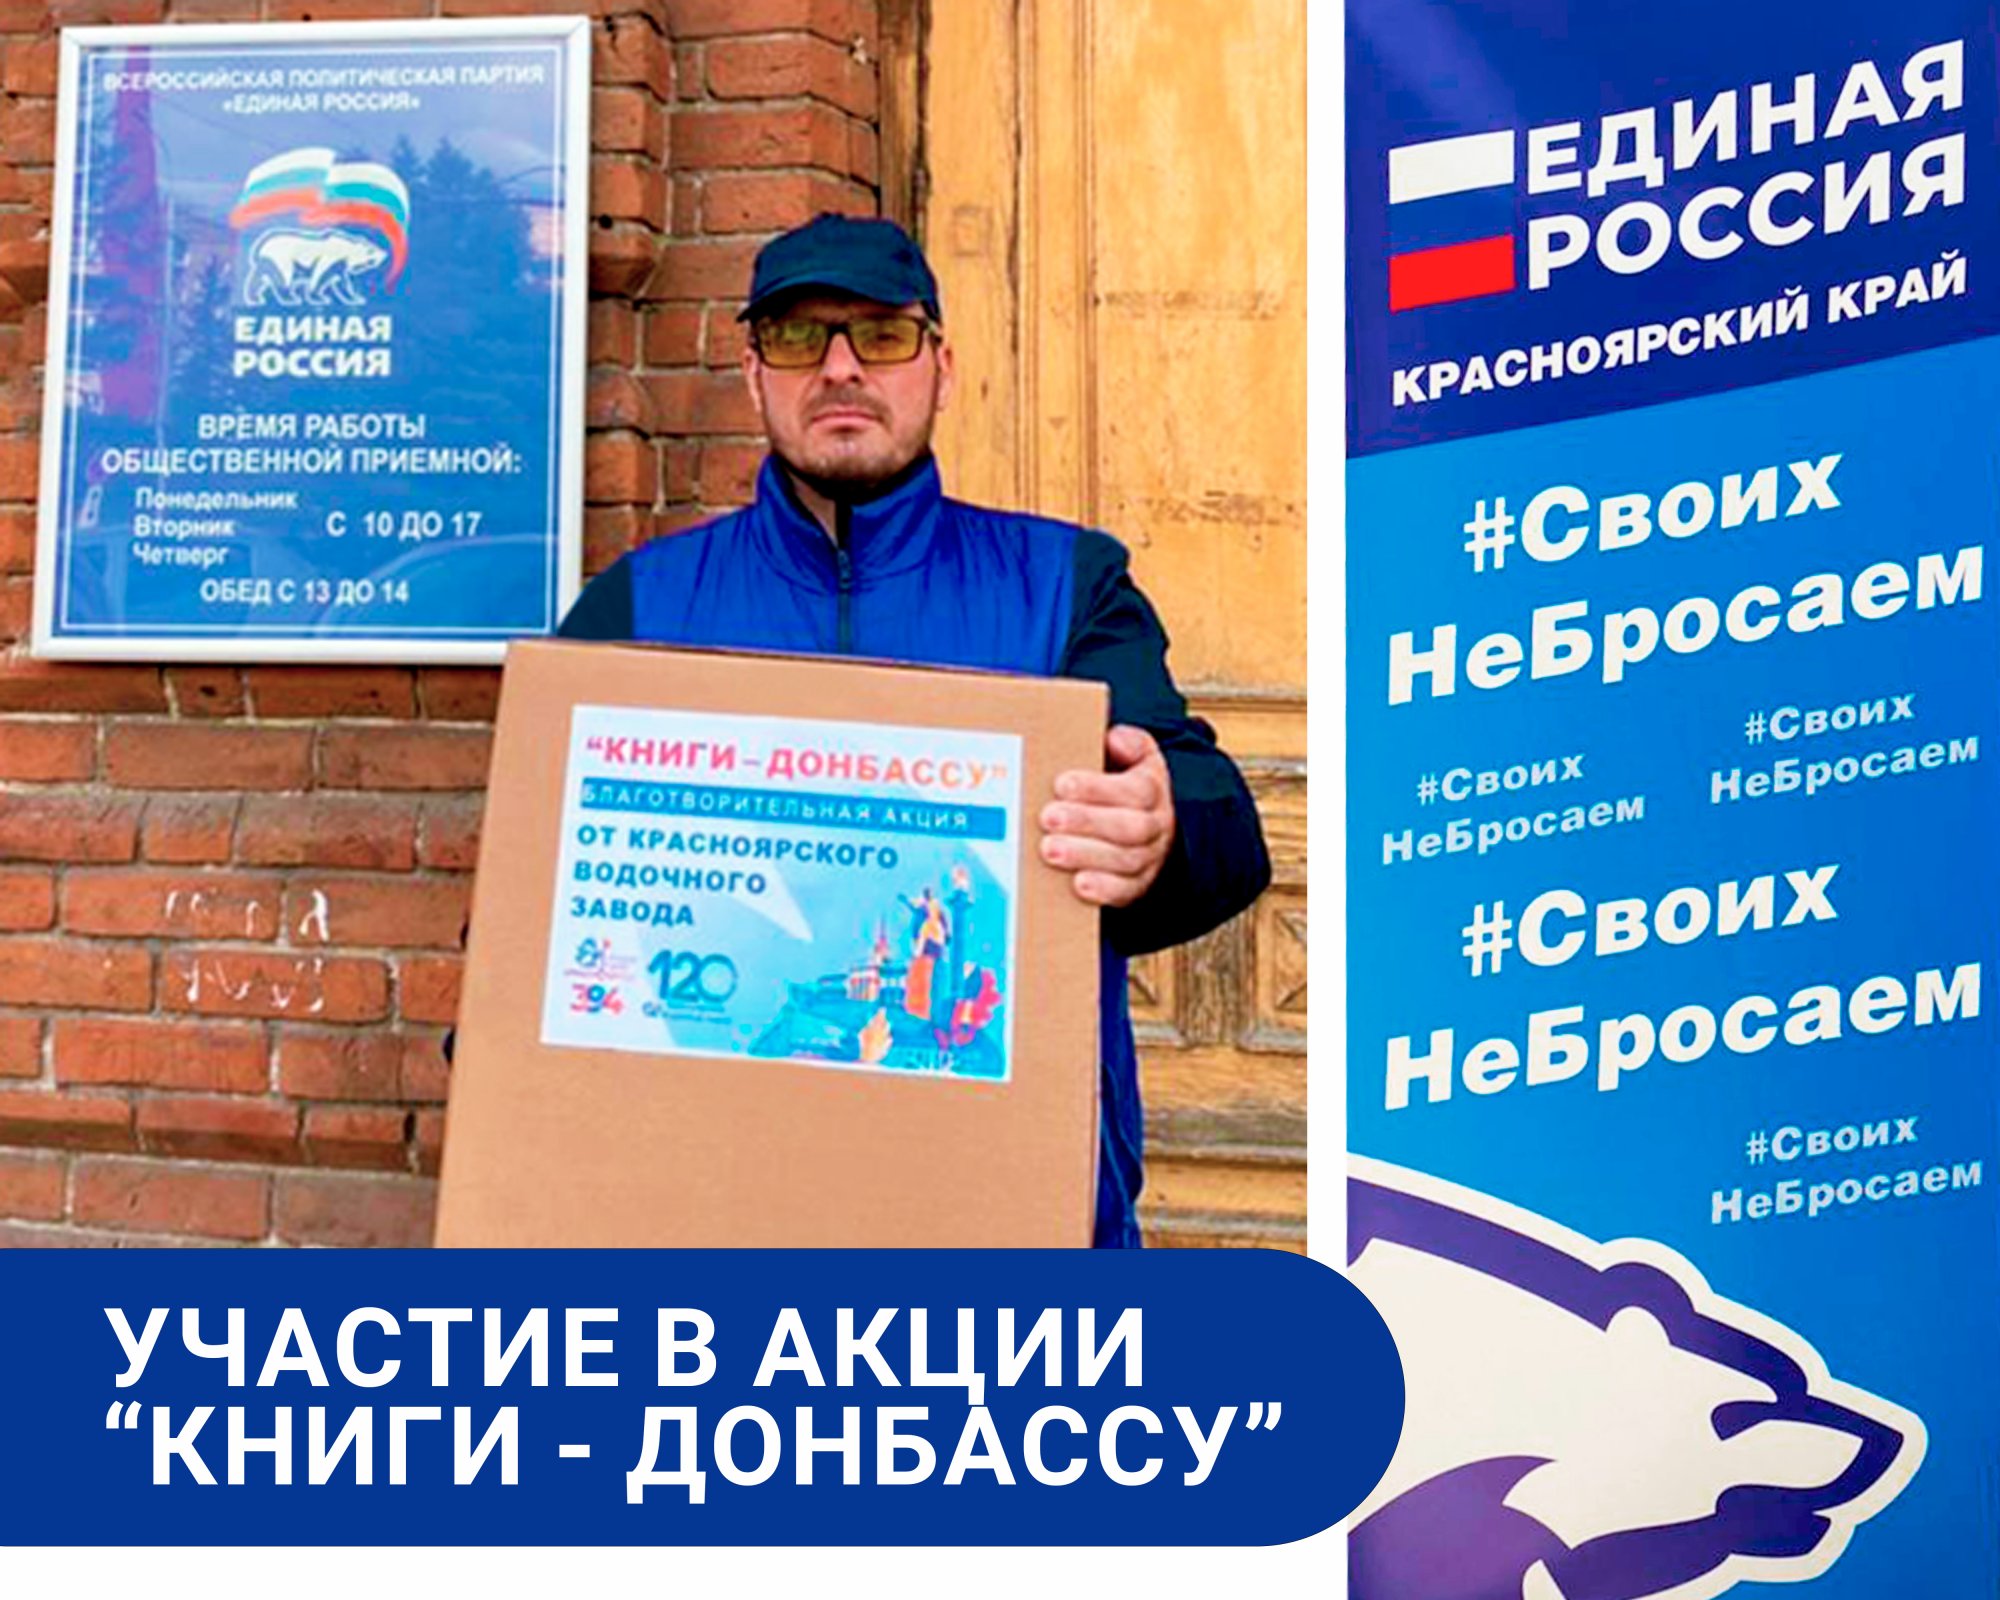 Участие в акции "Книги - Донбассу"